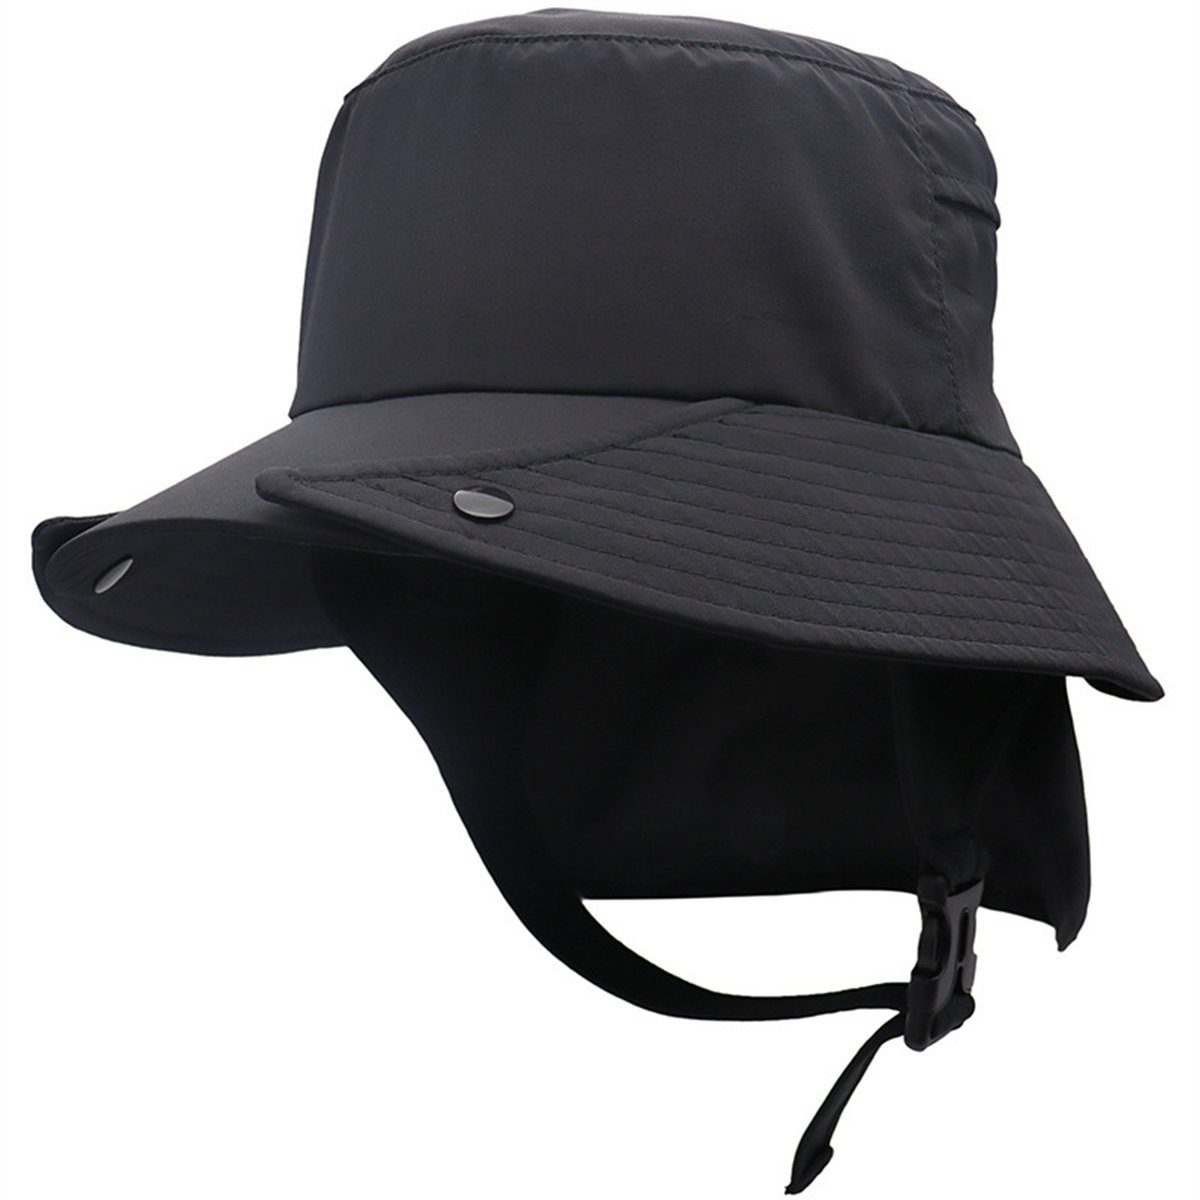 Discaver Schiebermütze UPF50+ abnehmbarer Fischerhut mit großer Krempe Schnell trocknende Mütze für Rad- und Outdoor-Abenteuer Schwarz